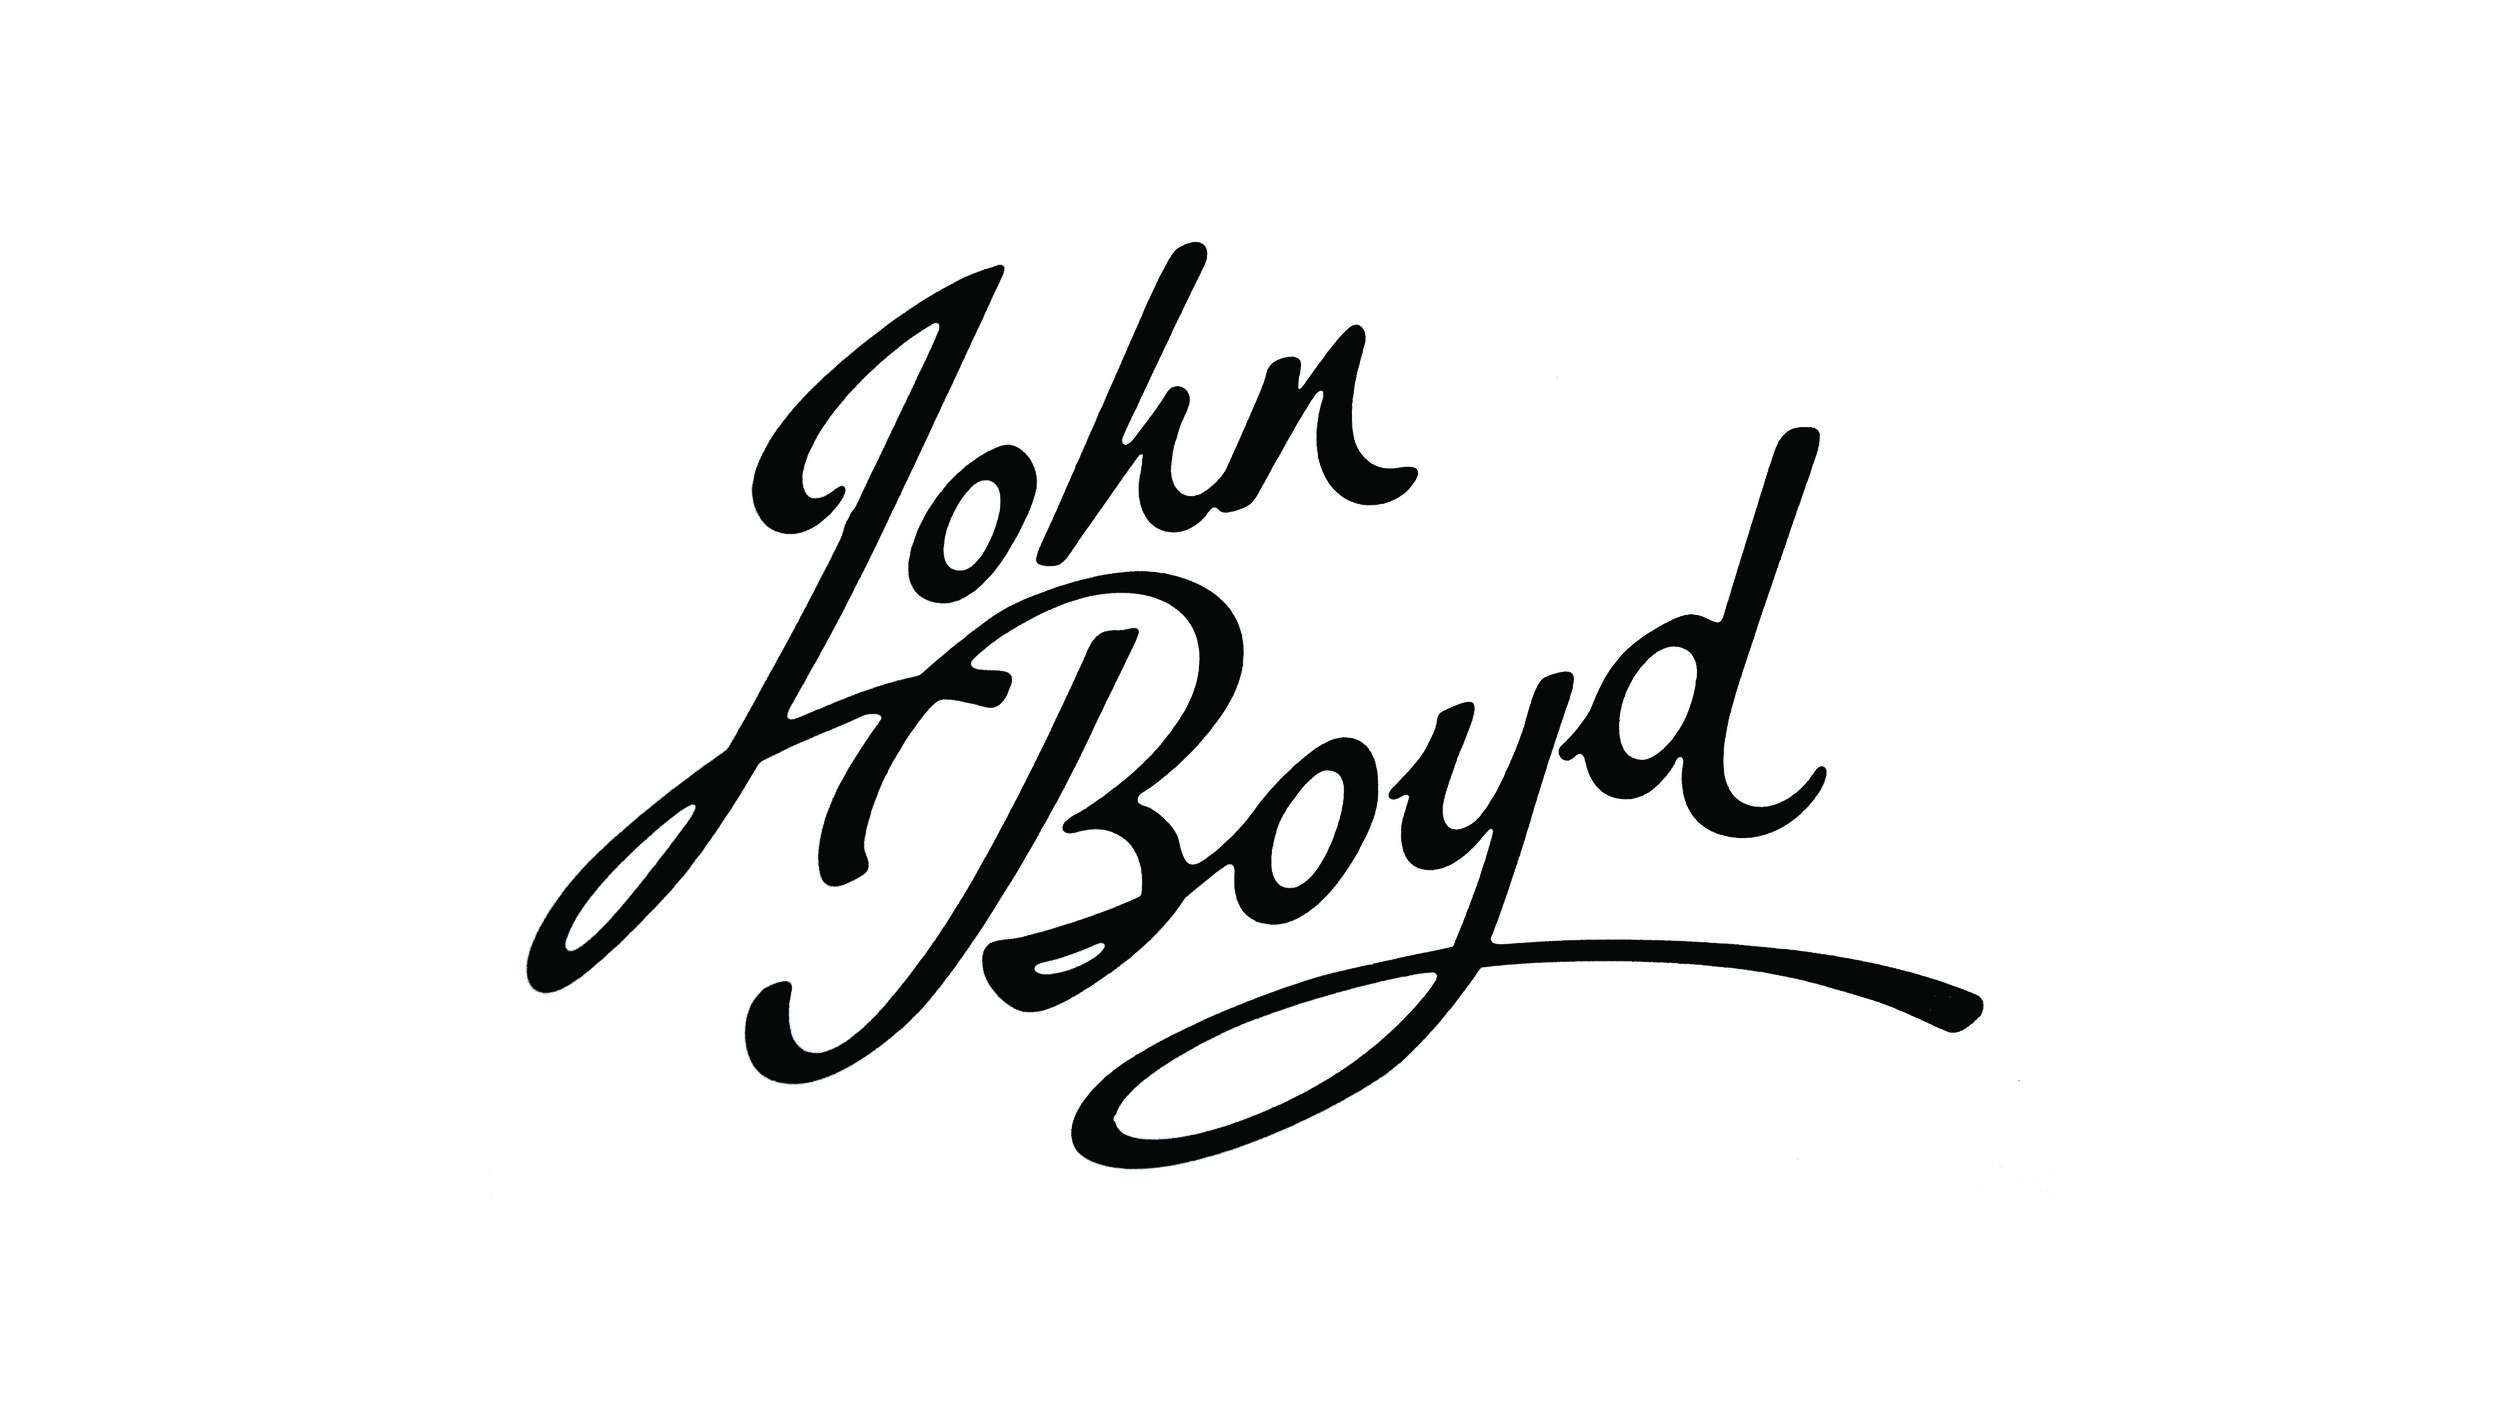 John Boyd